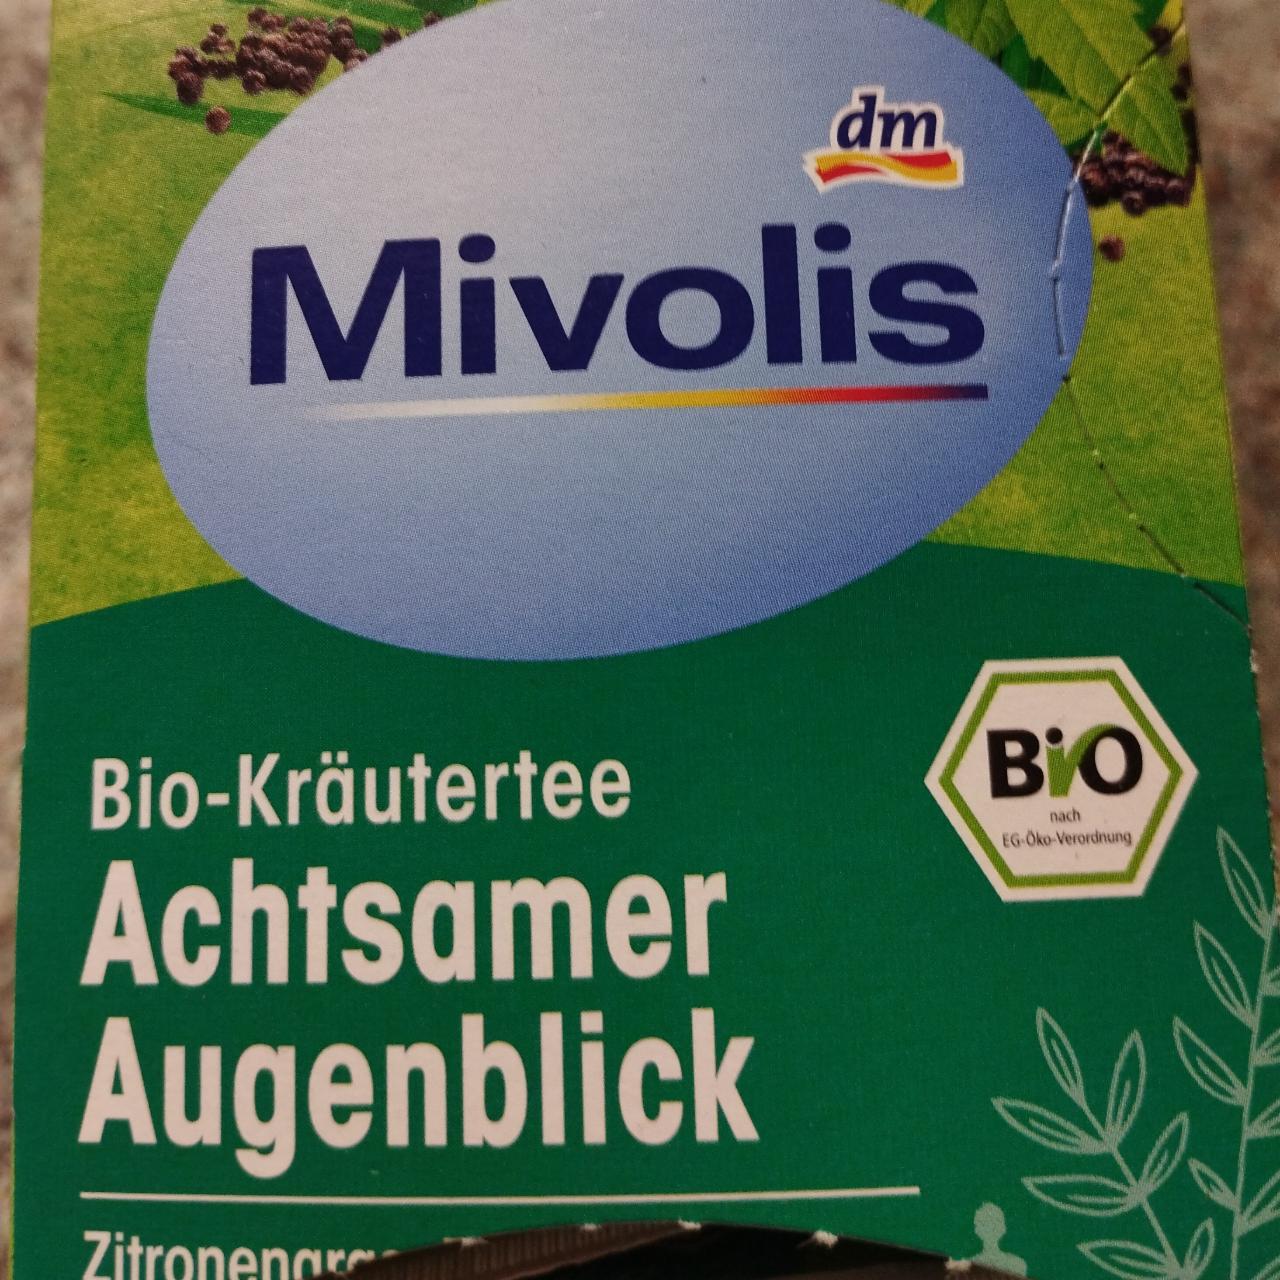 Fotografie - Dm Bio-Kräutertee Achtsamer Augenblick Mivolis